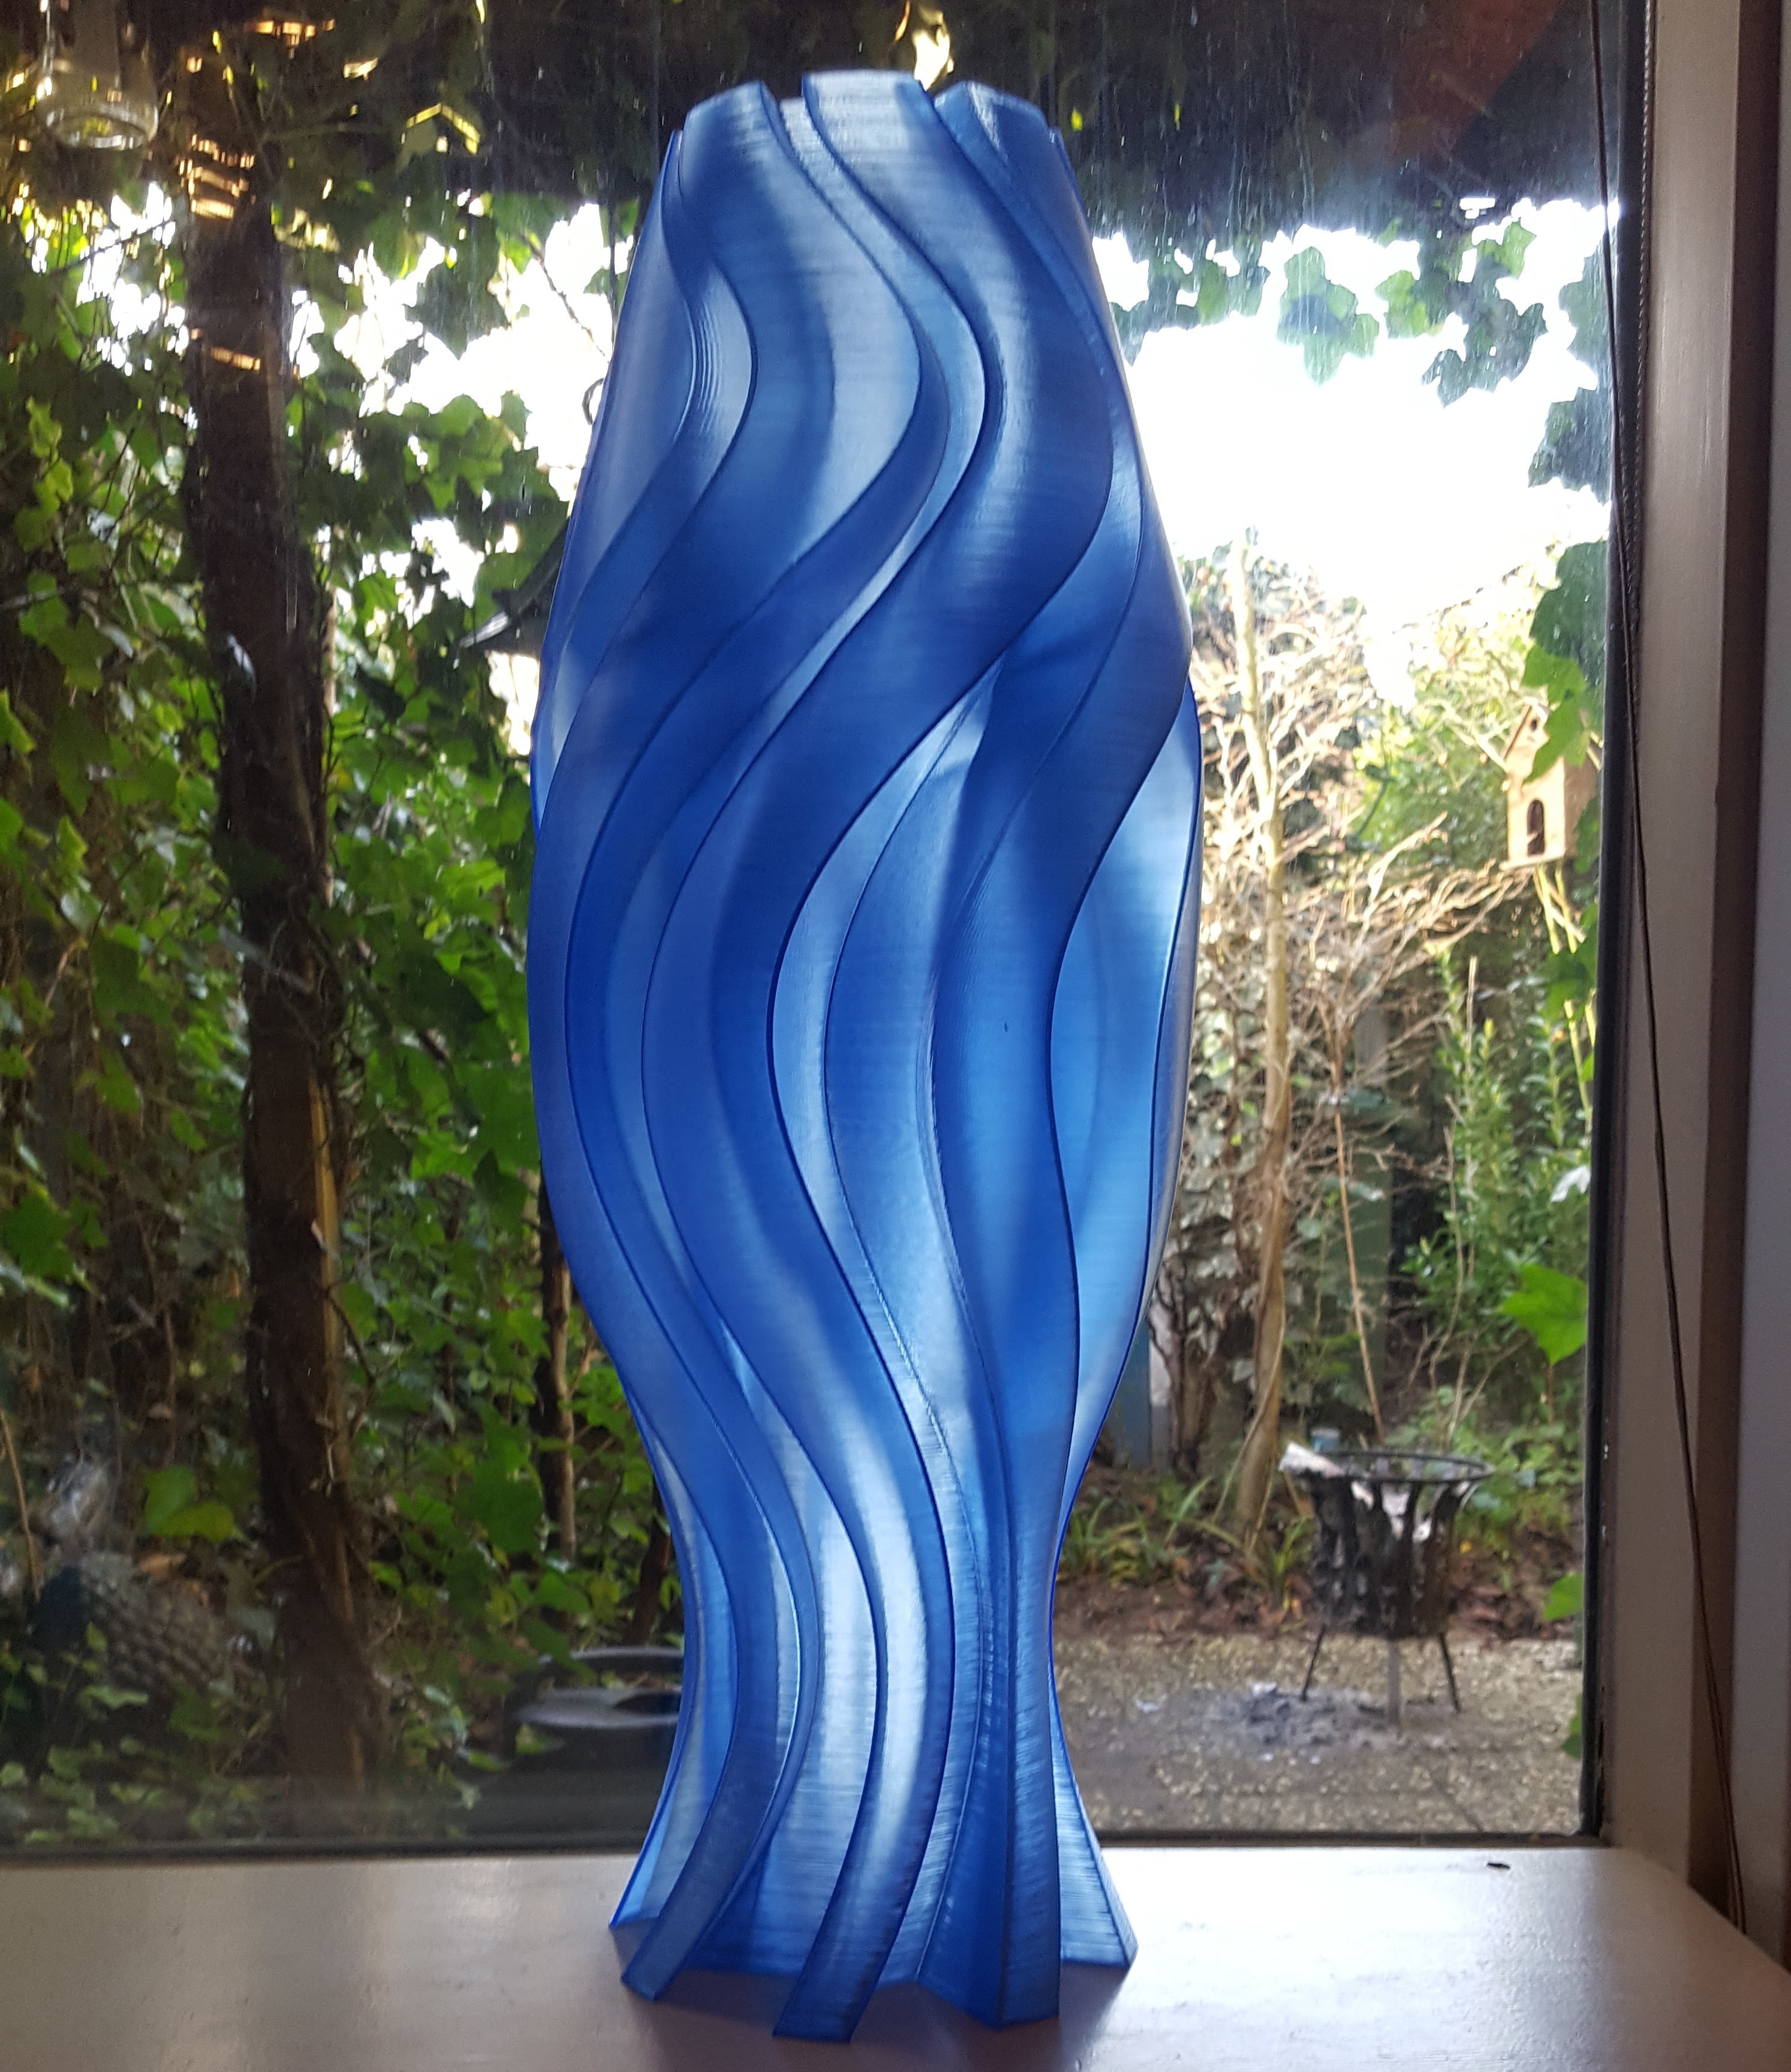 3D Printed The Blue Lamp by jobsmolders